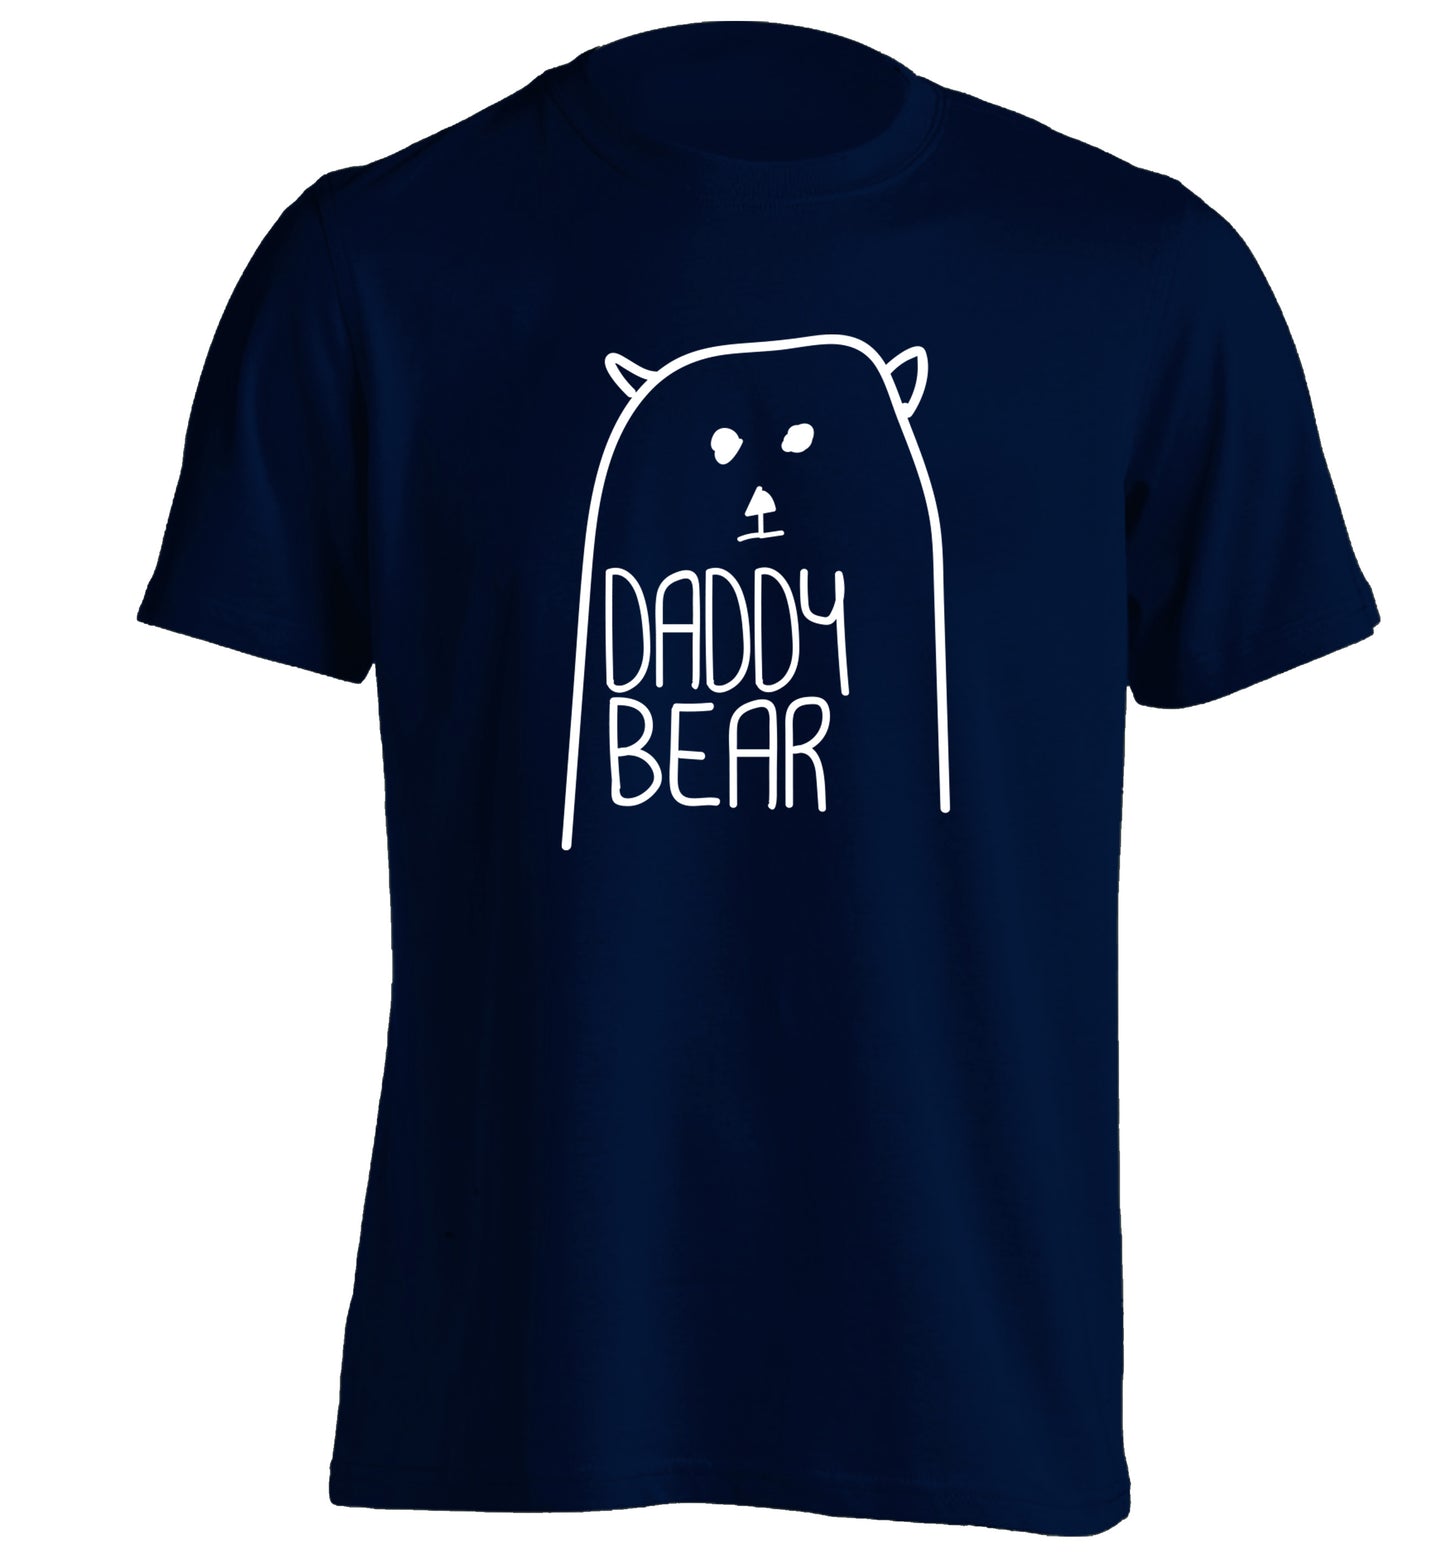 Daddy bear adults unisex navy Tshirt 2XL